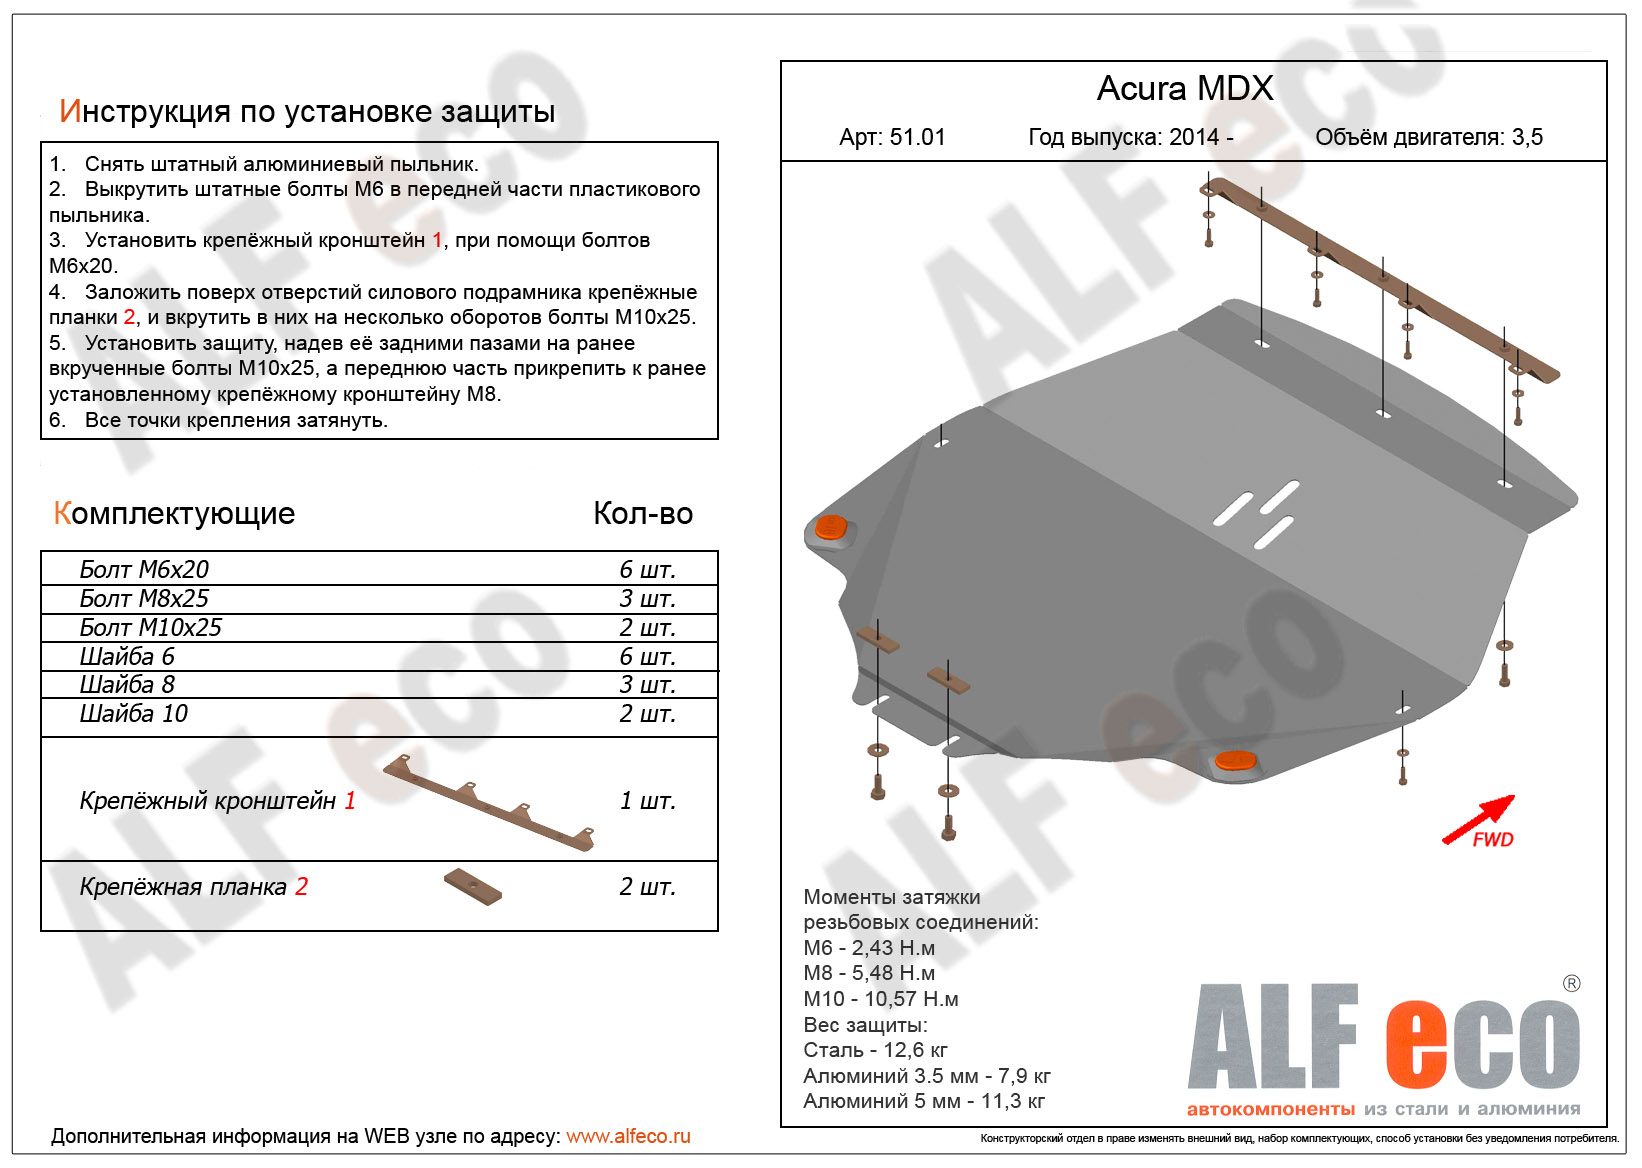 ,    Acura MDX 2014 -
                